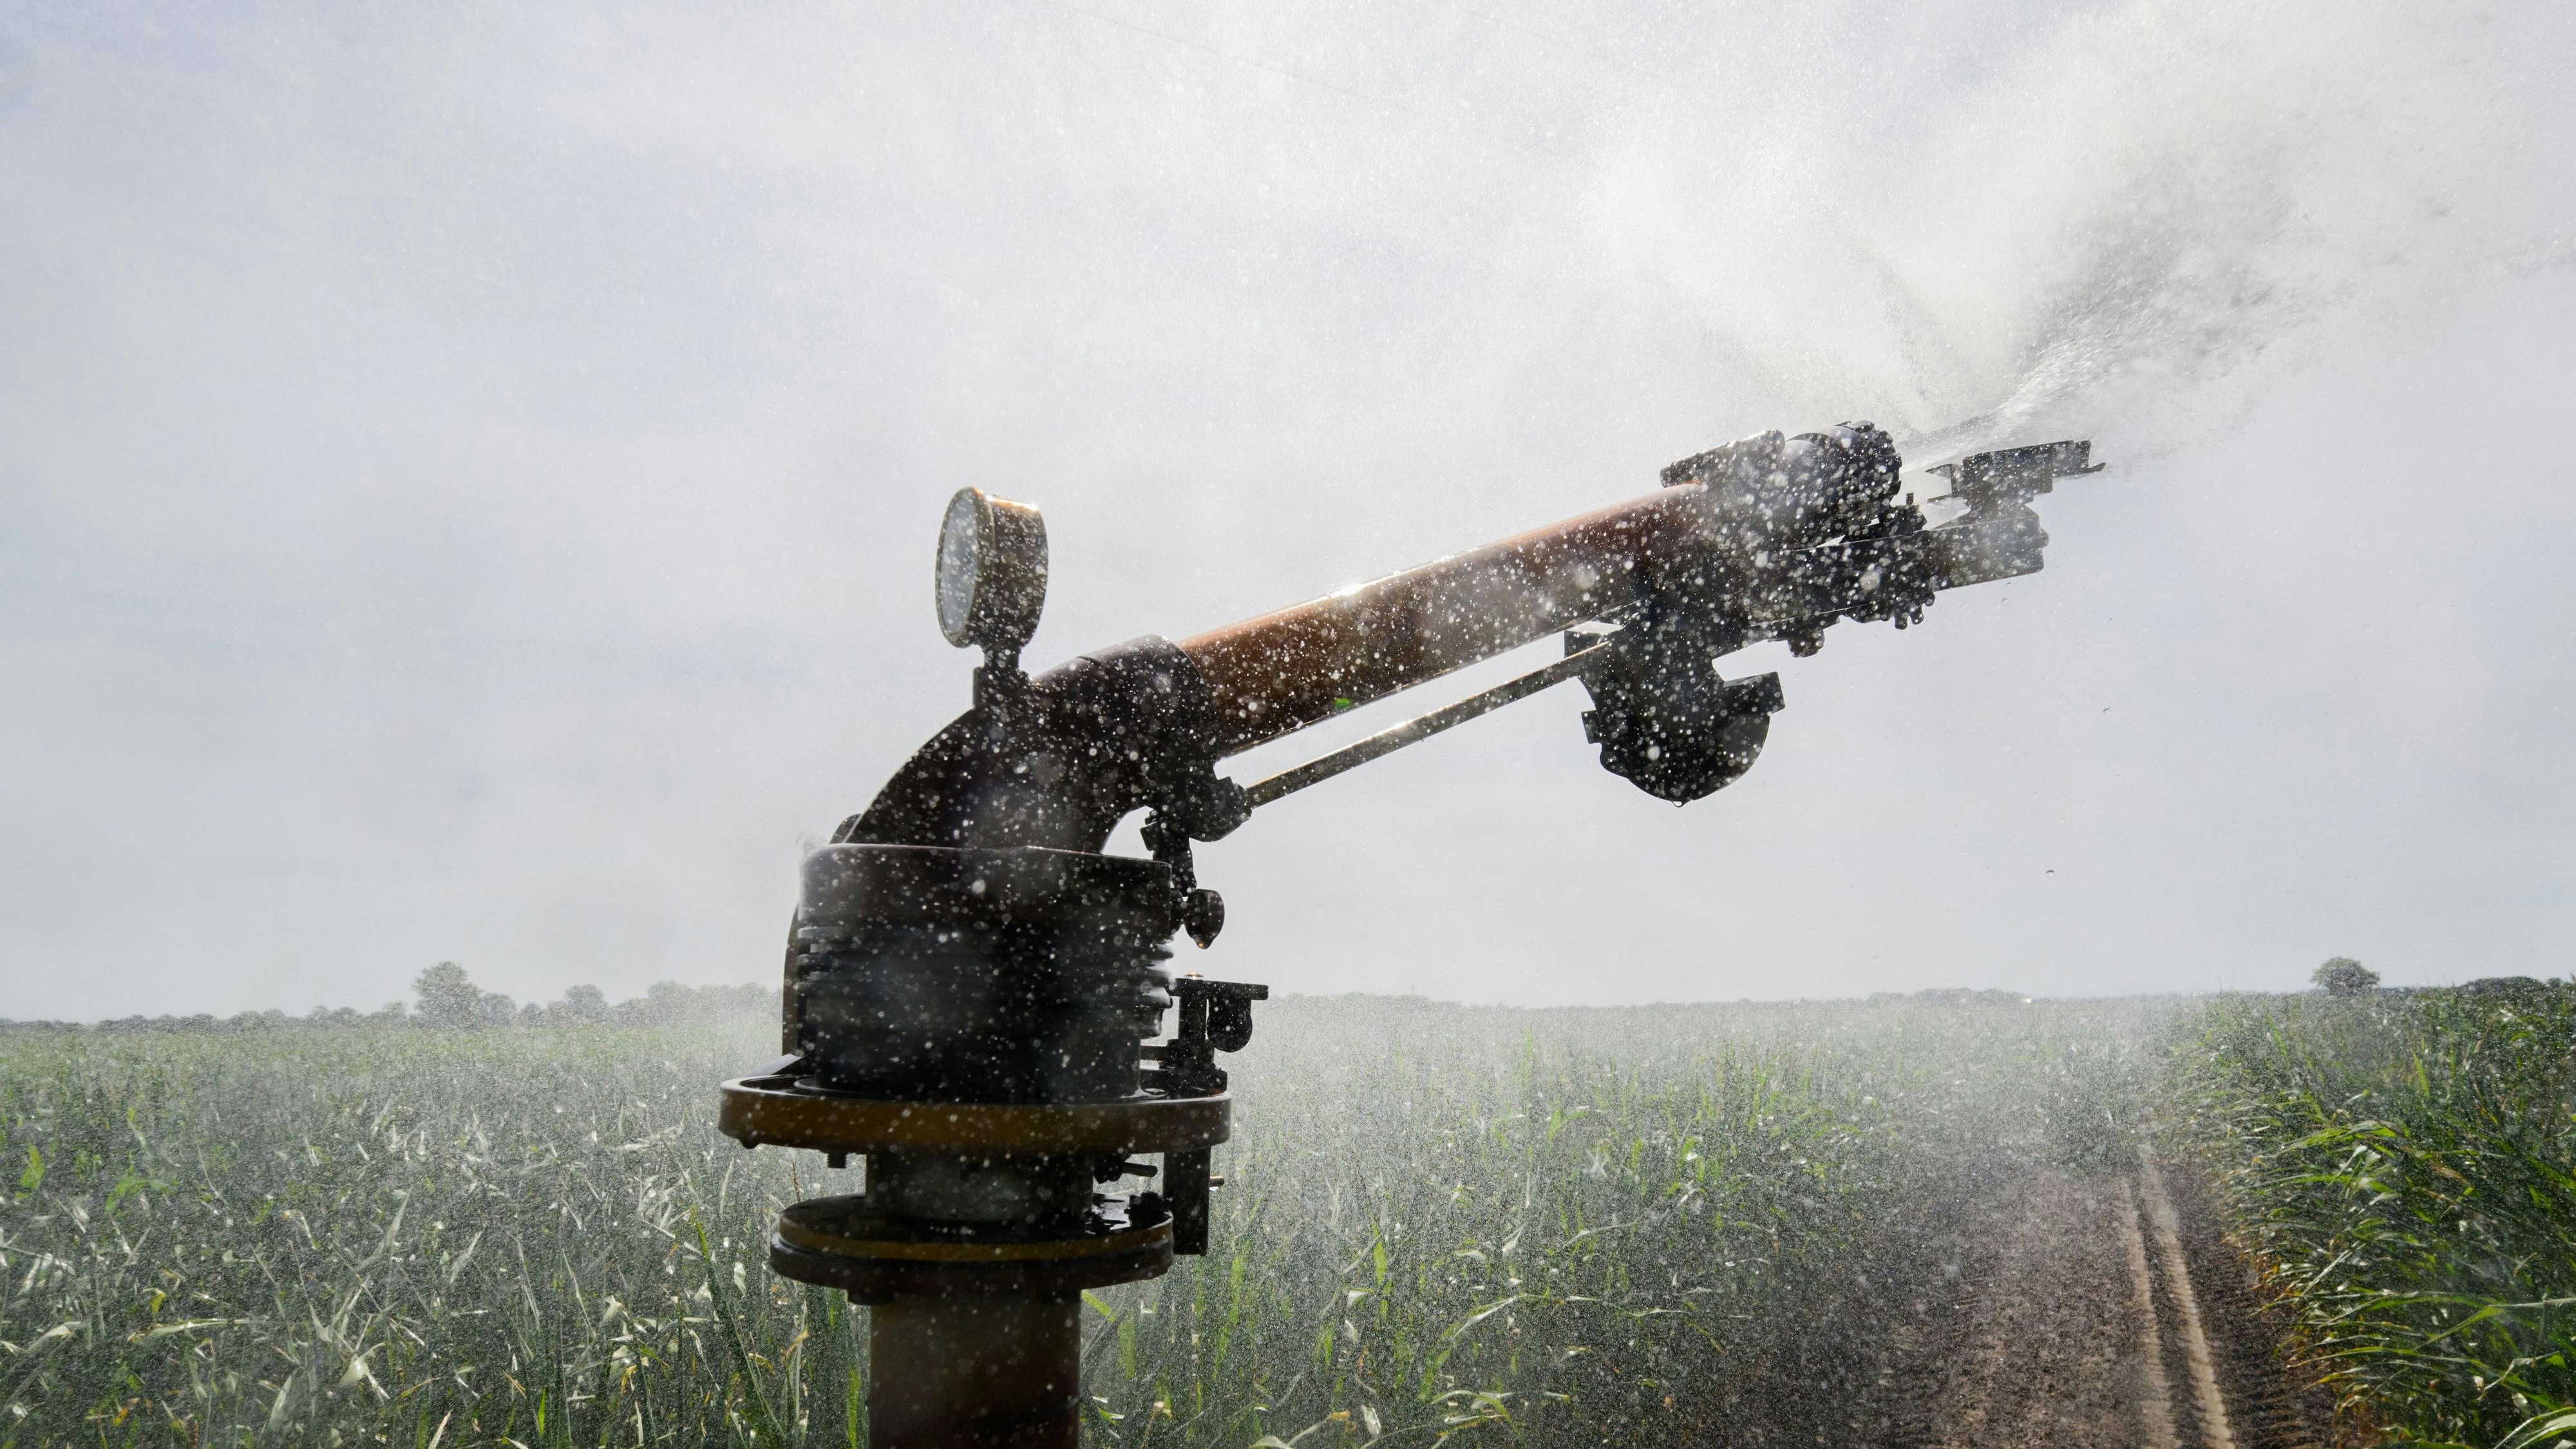 Einfach durch die Luft geschossen: Beregnung eines Maisfeldes. Im Sommer war diese Art der Bewässerung nur eingeschränkt erlaubt. Foto: dpa